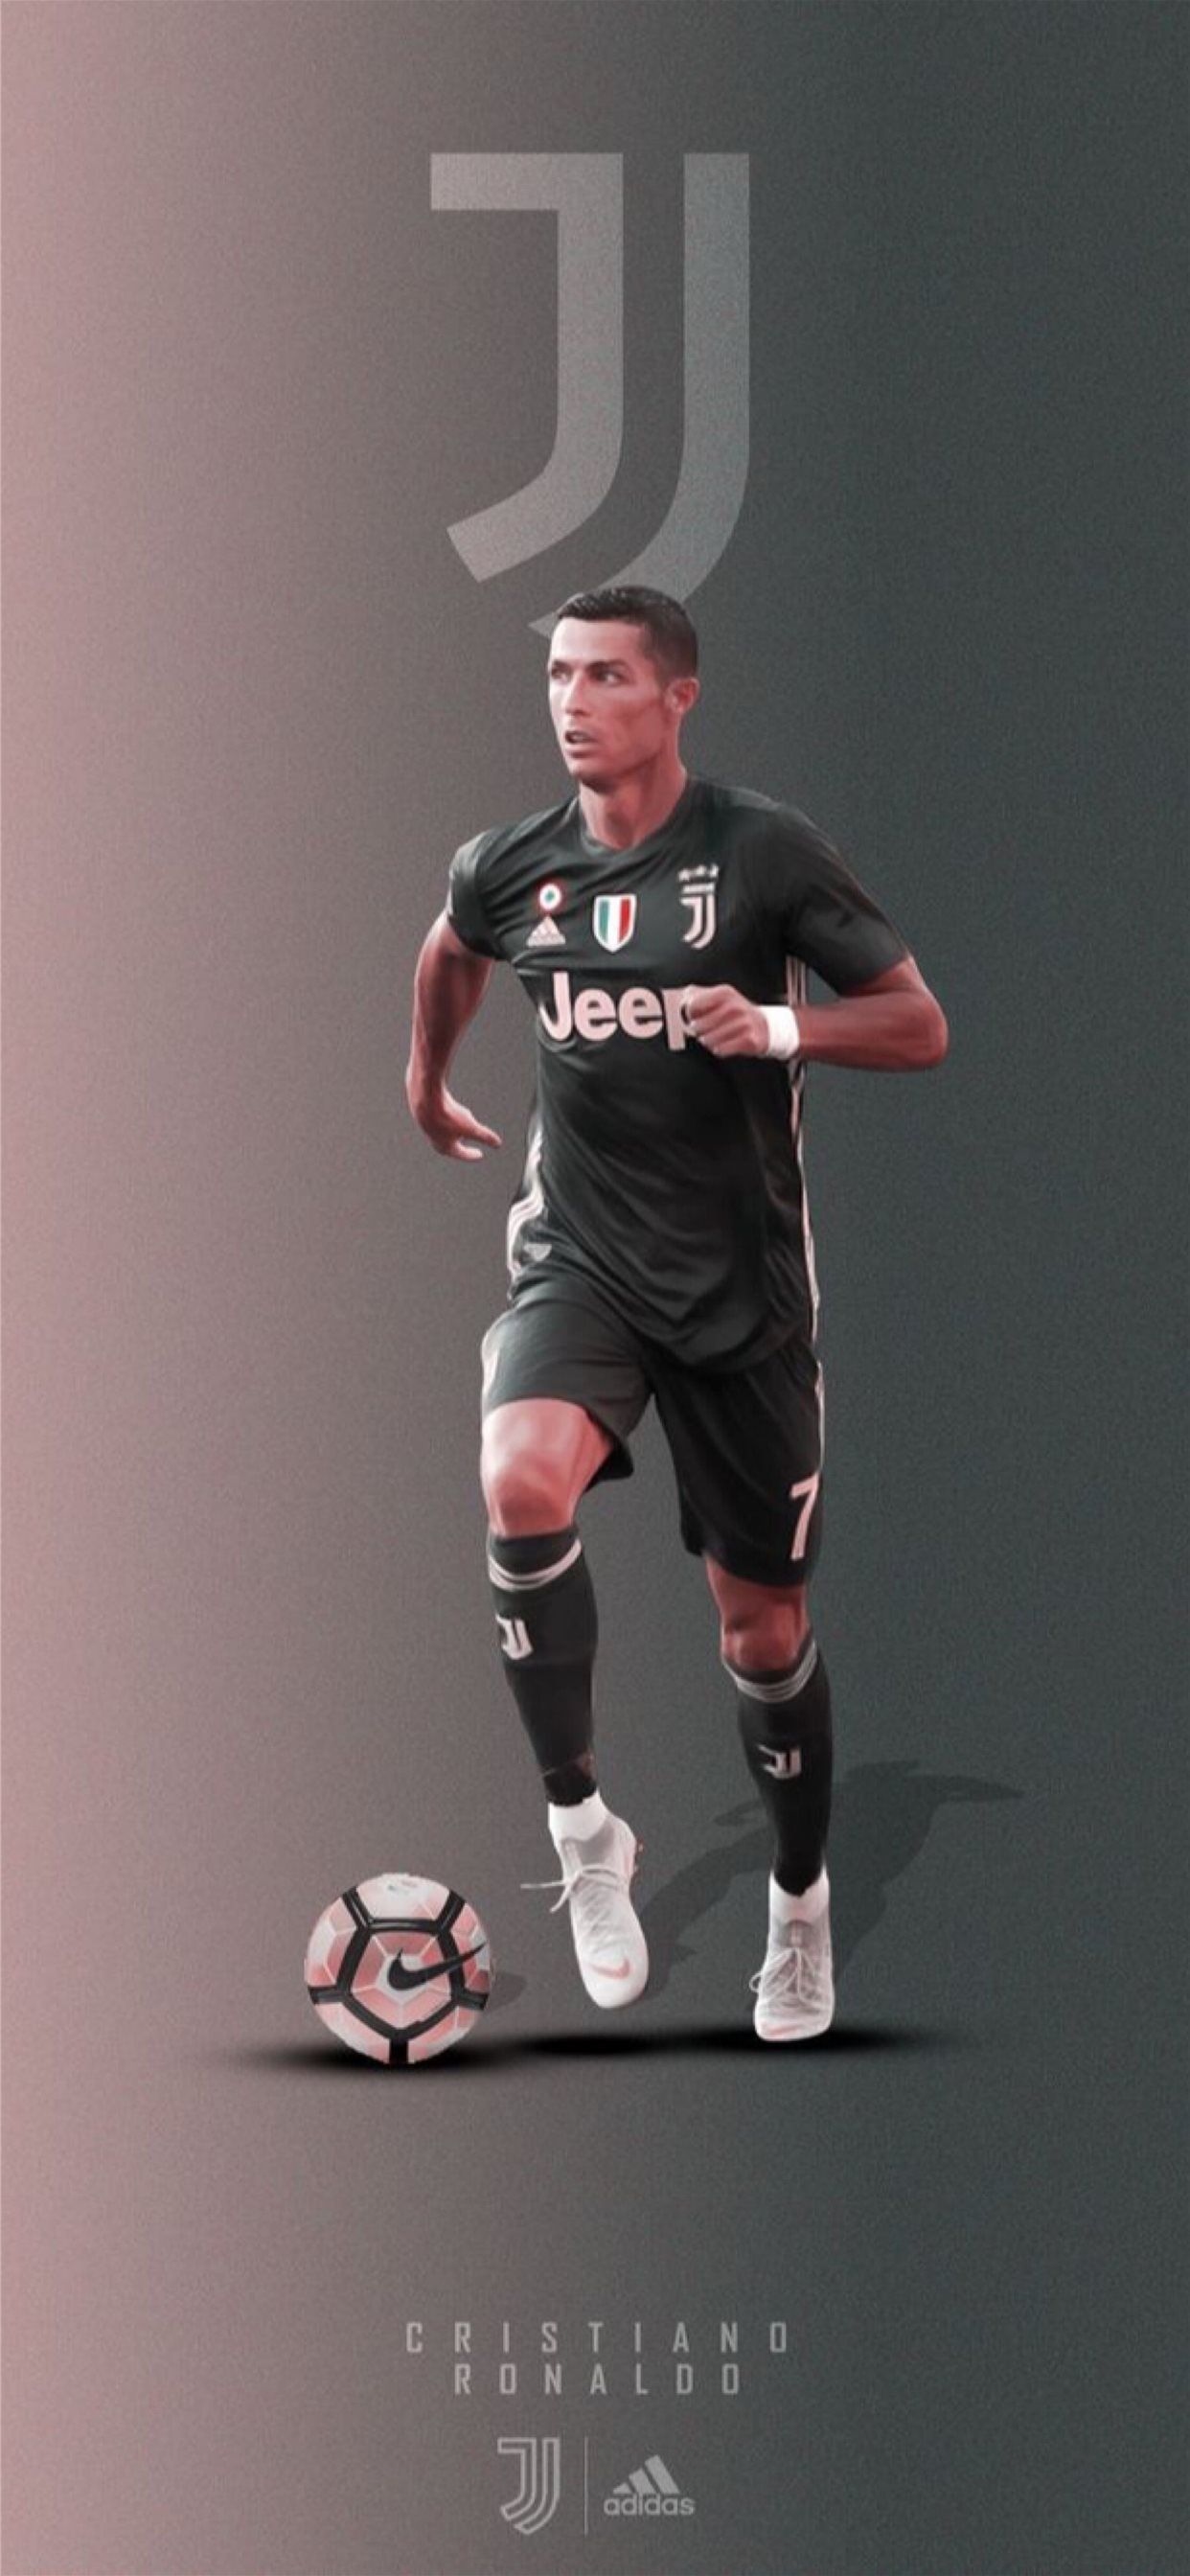 Cristiano Ronaldo In Black Jersey